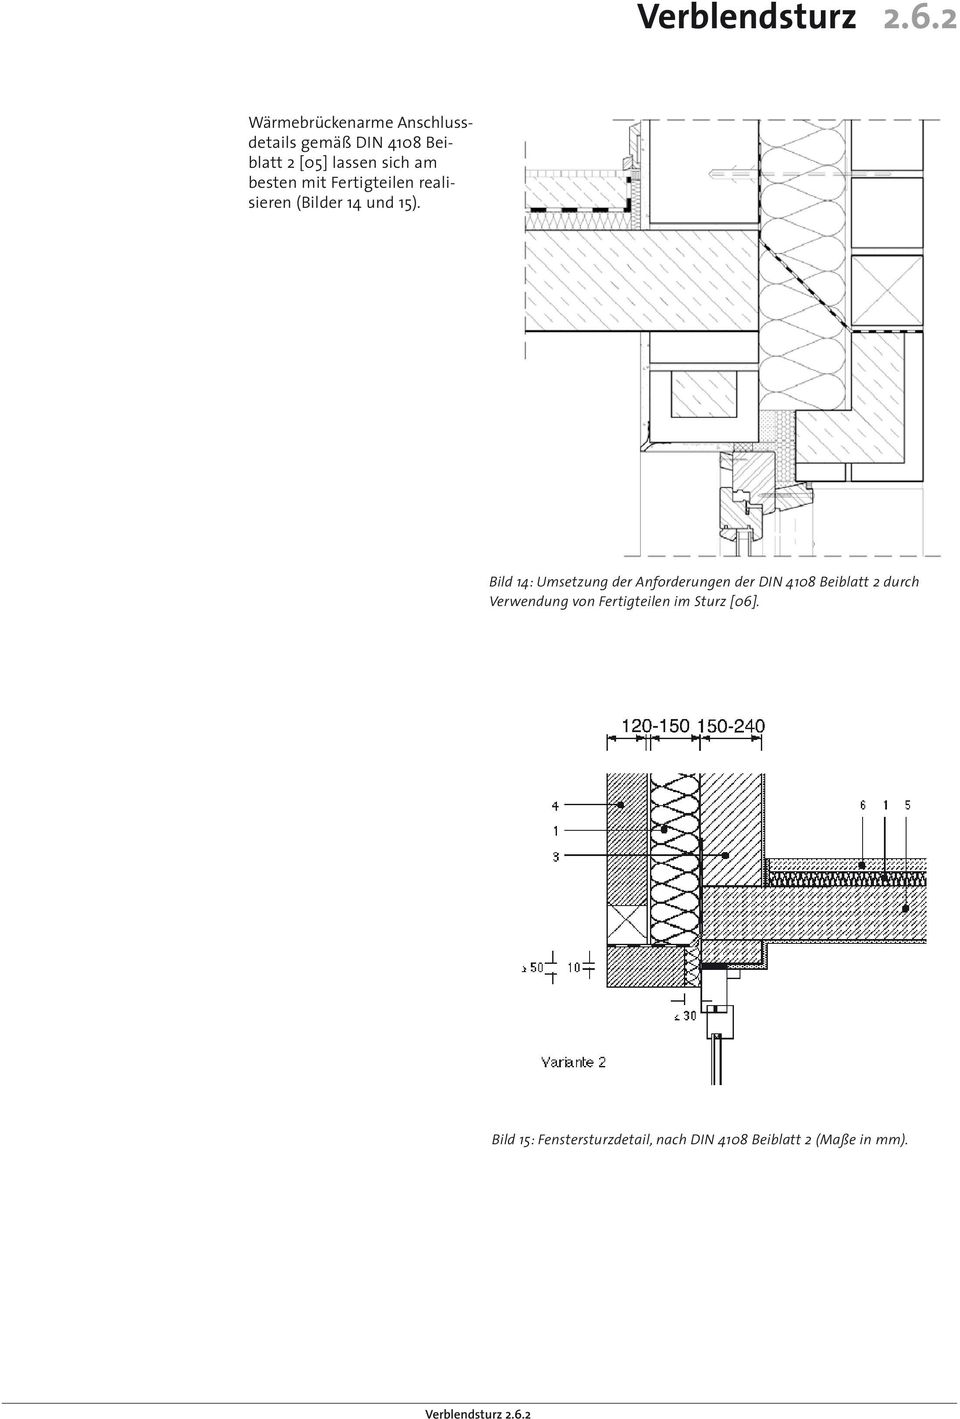 Bild 14: Umsetzung der Anforderungen der DIN 4108 Beiblatt 2 durch Verwendung